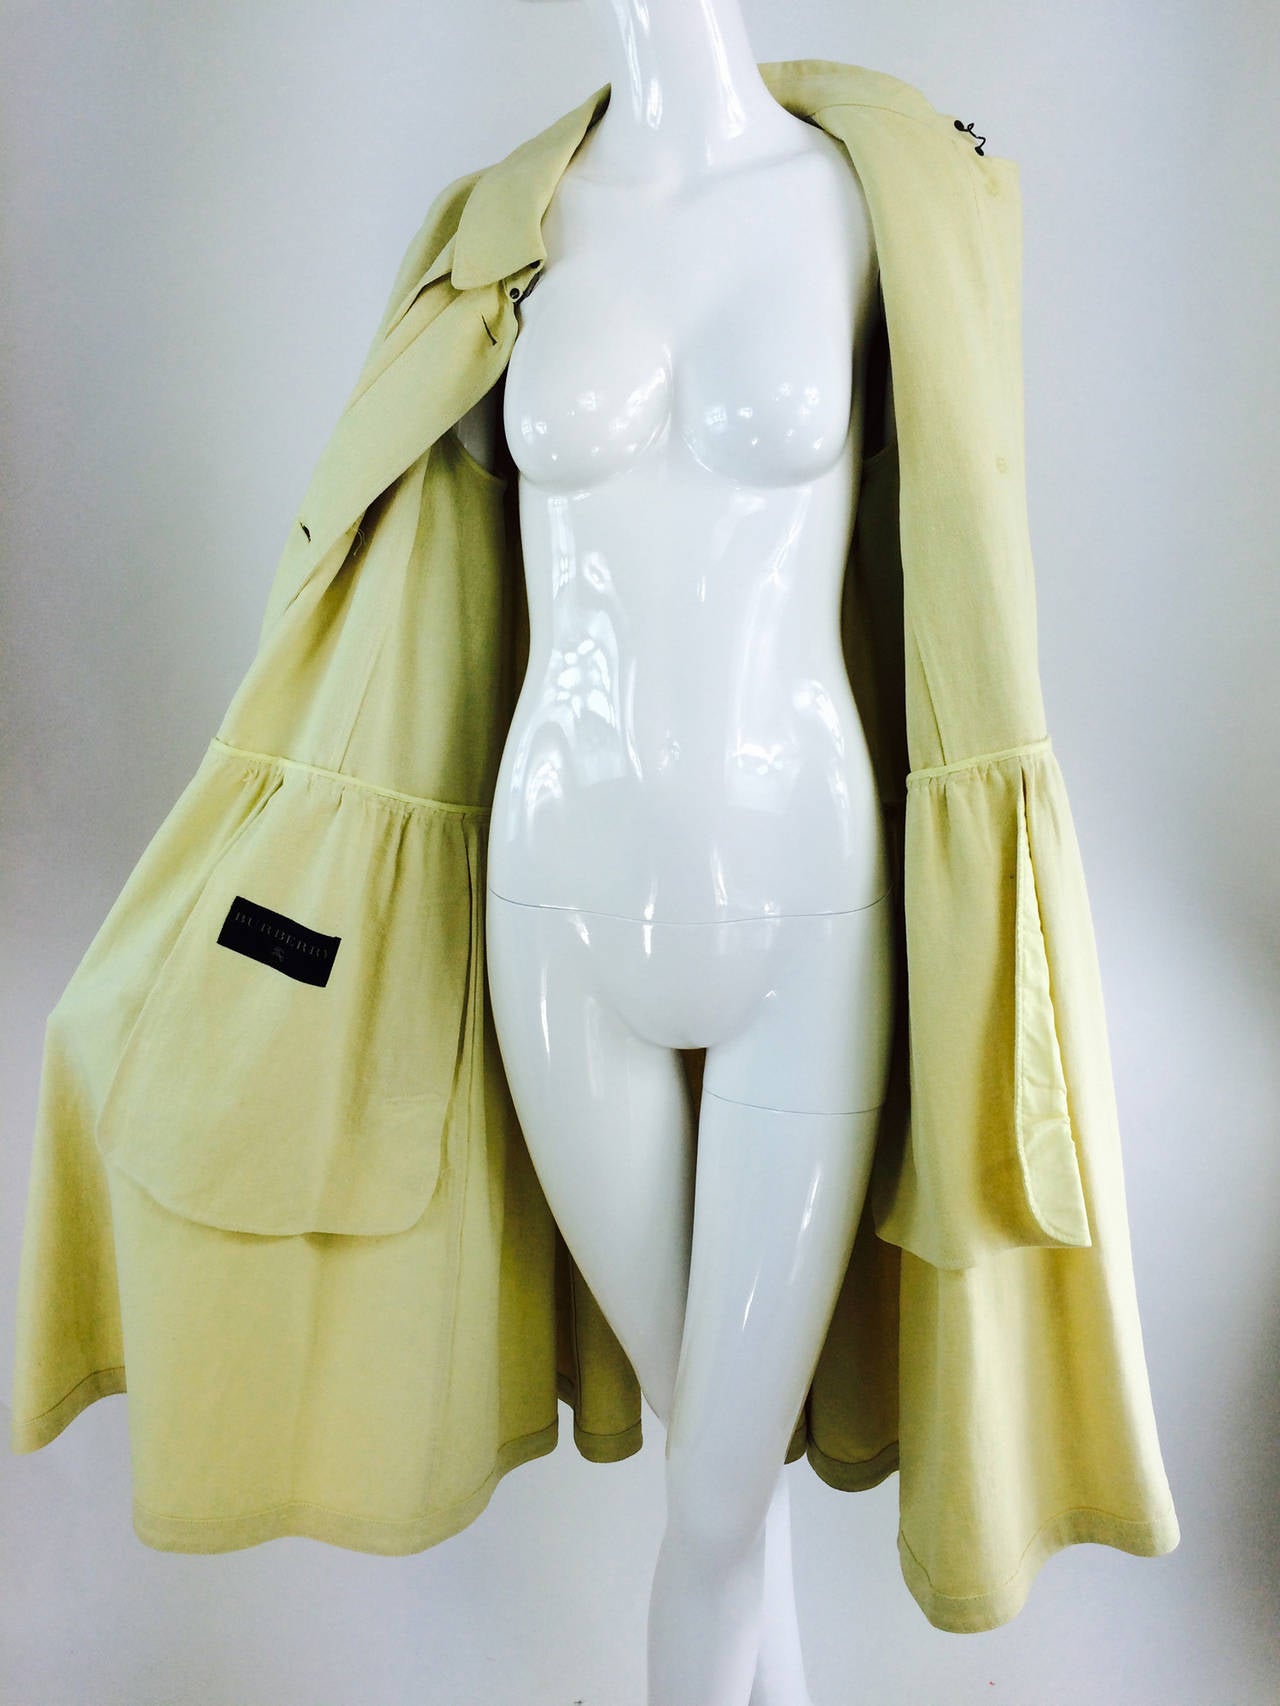 Burberry butter yellow hemp coat dress 2005 5